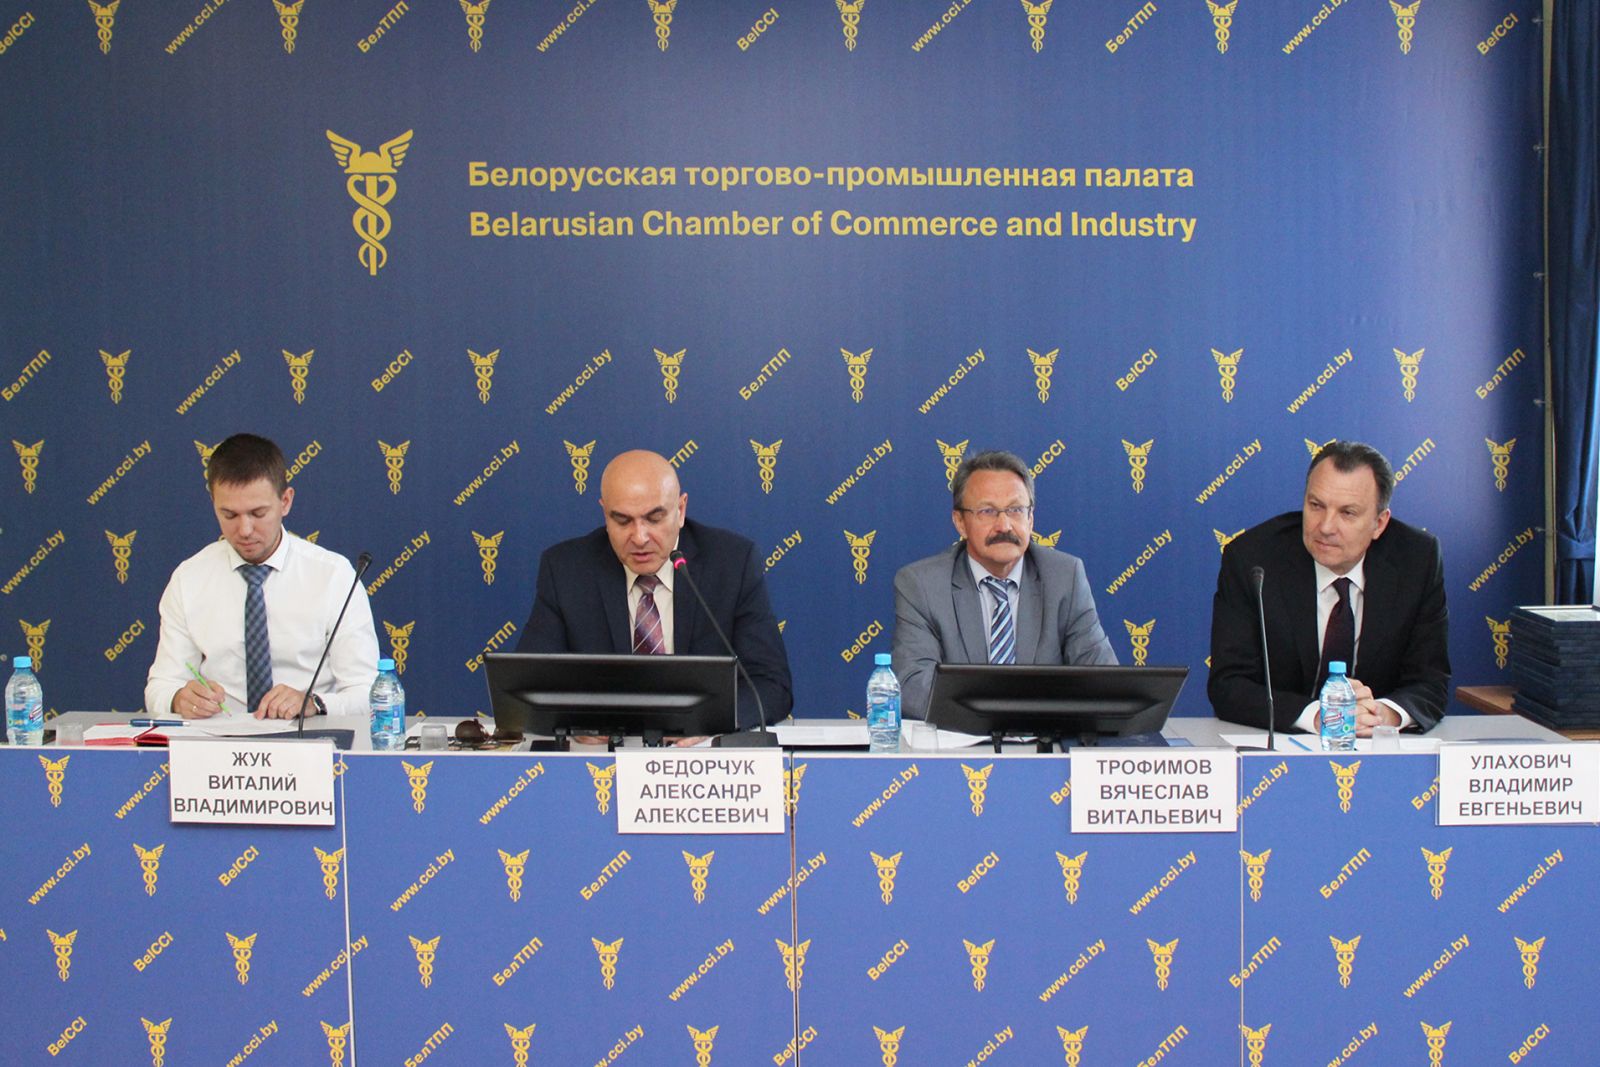 Приветствуем новых членов Белорусской торгово-промышленной палаты